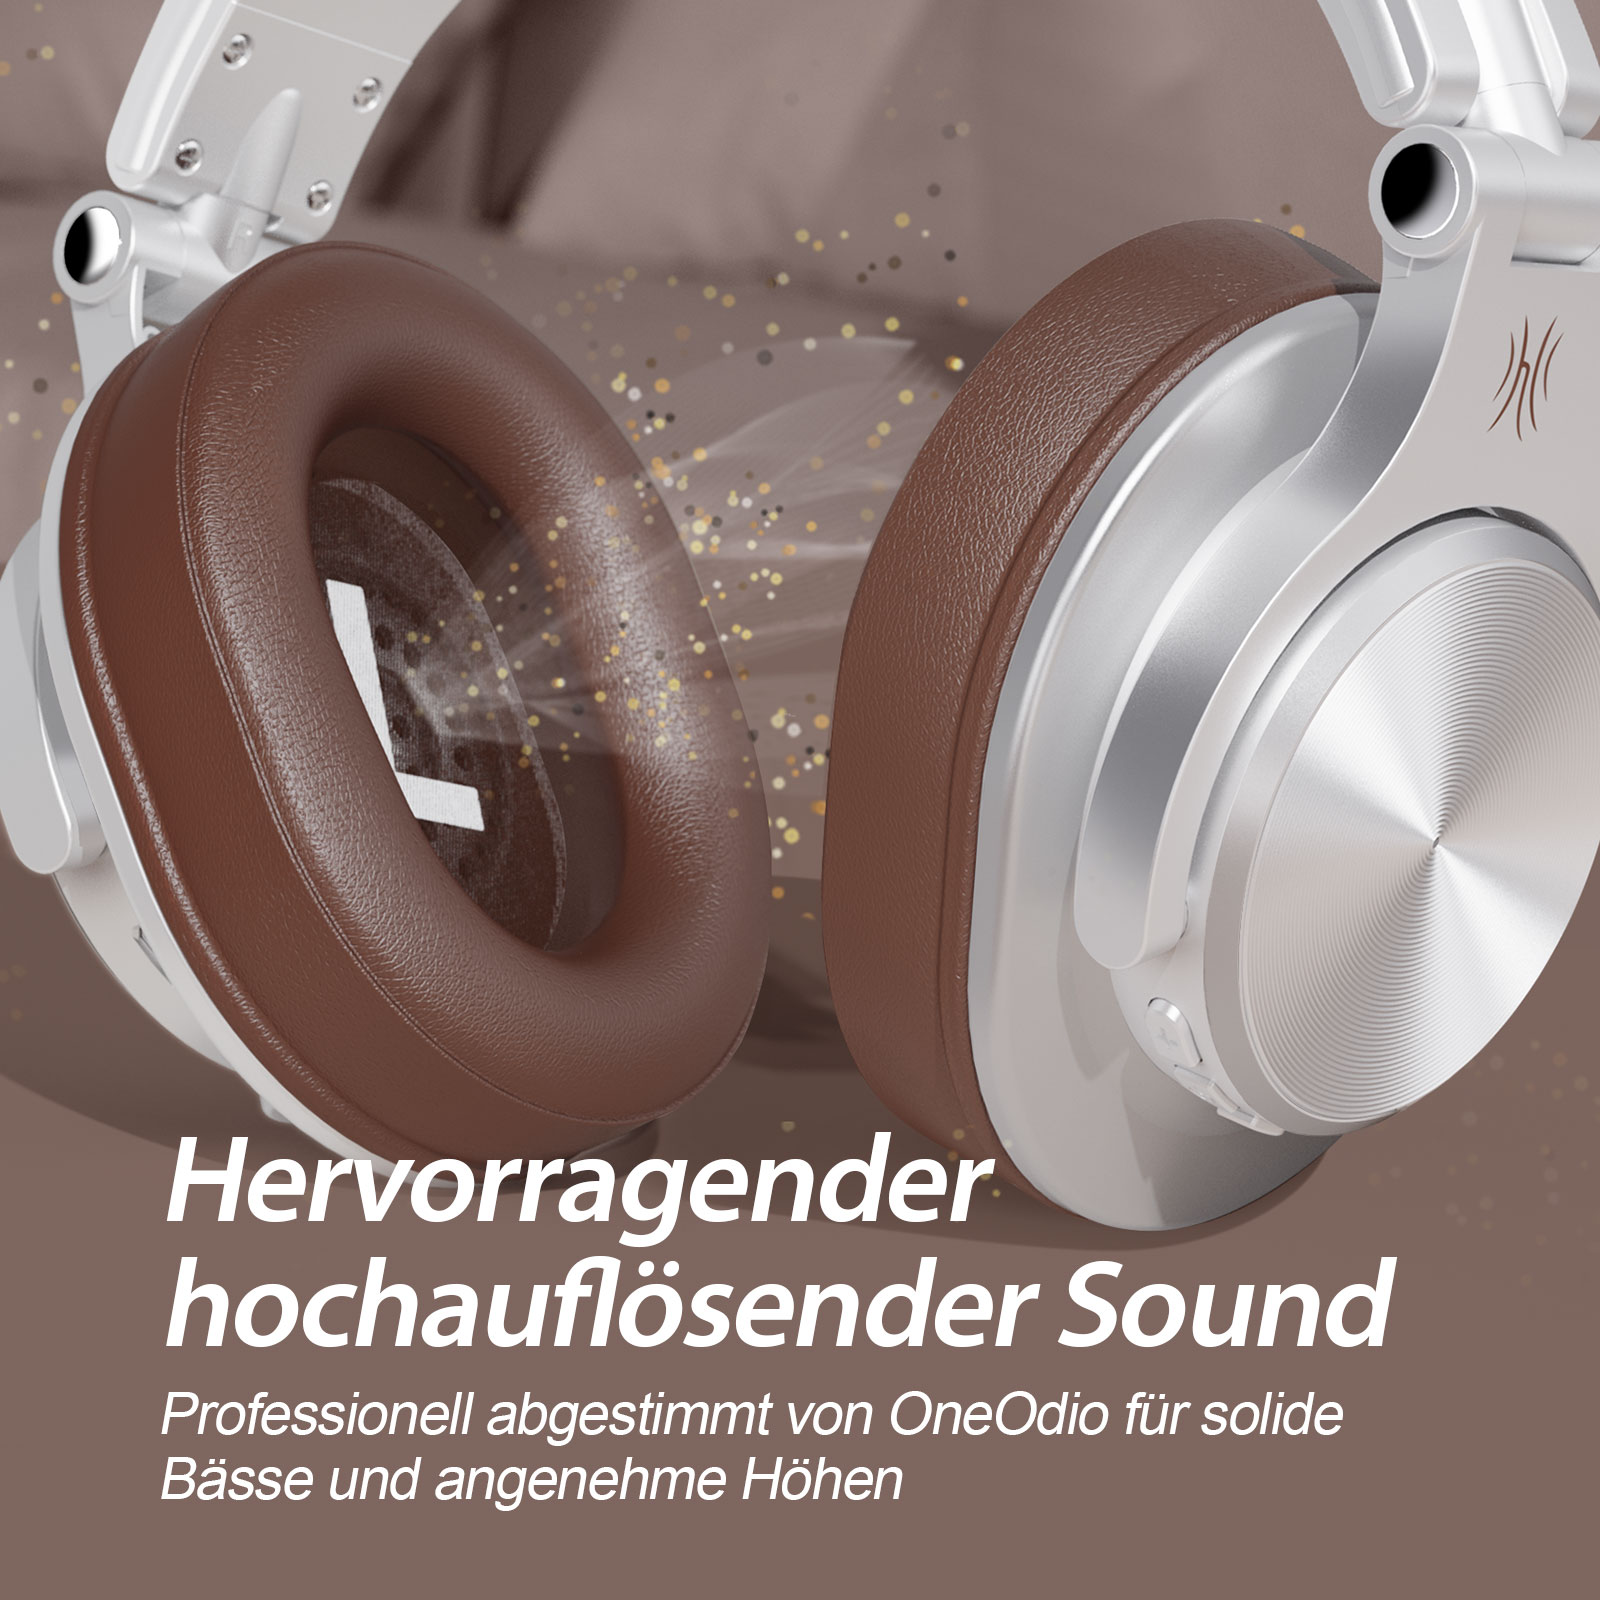 ONEODIO A70, Over-ear Silber Kopfhörer Bluetooth